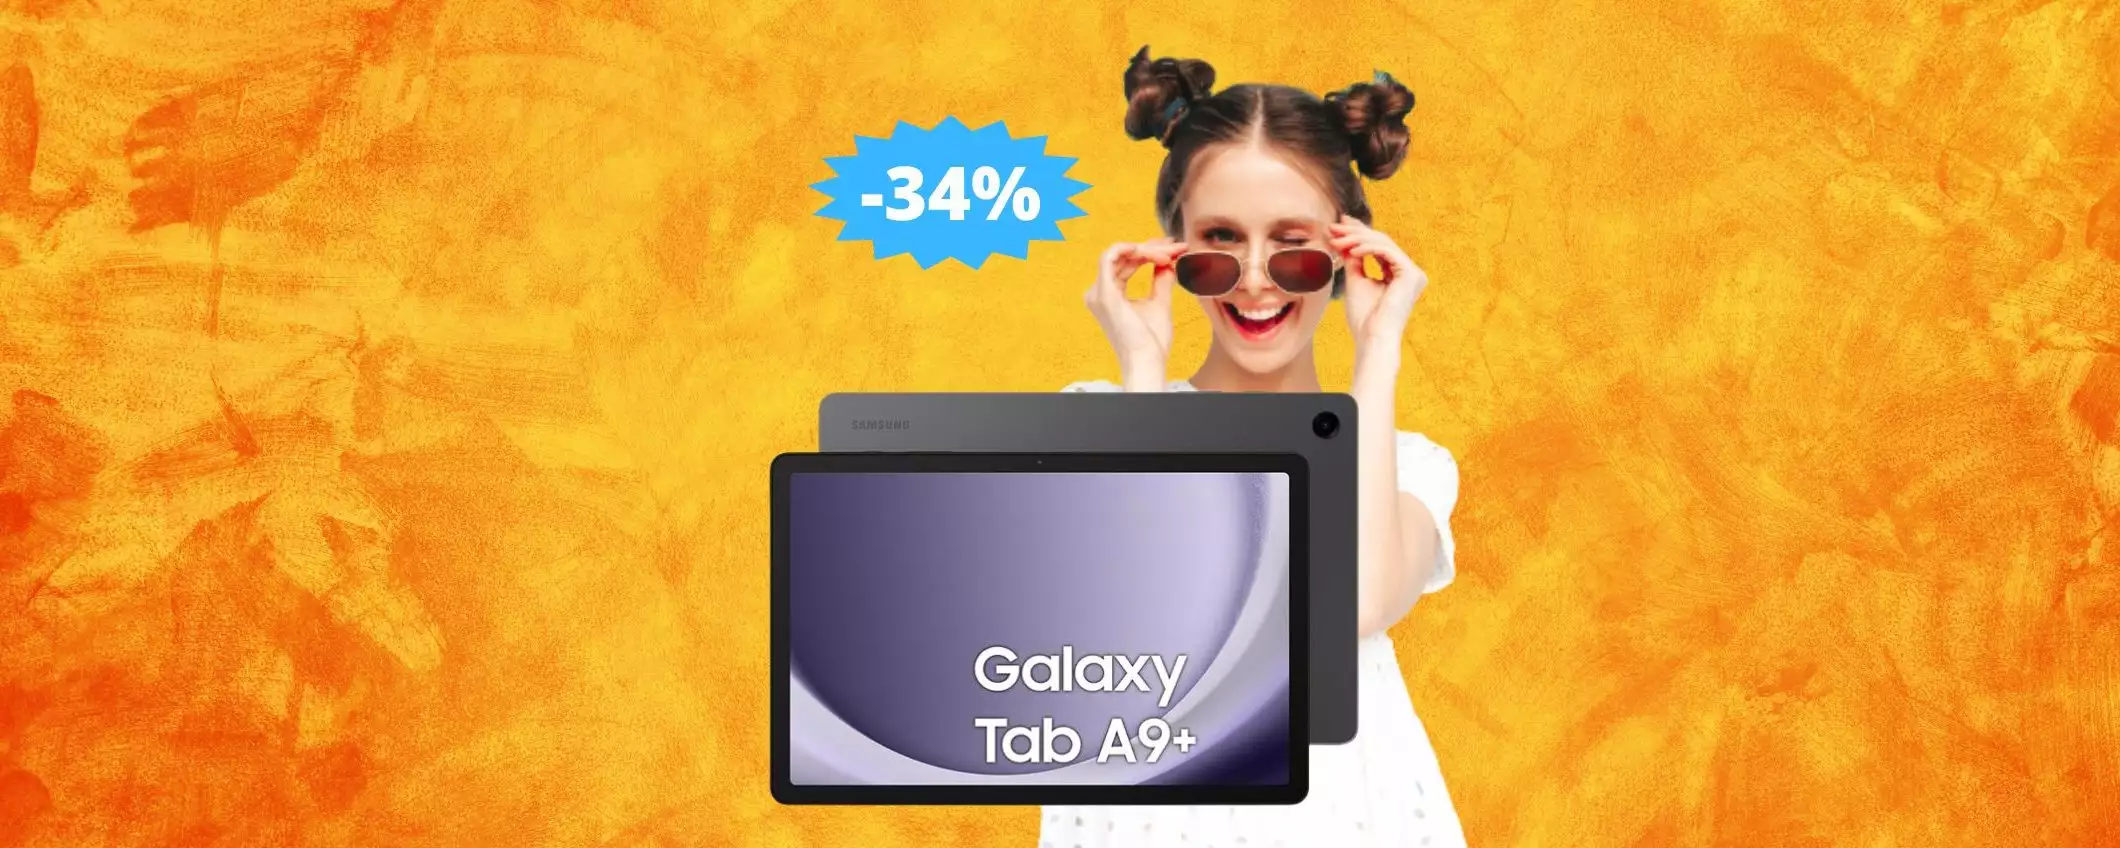 Samsung Galaxy Tab A9+: un AFFARE da non perdere (-34%)